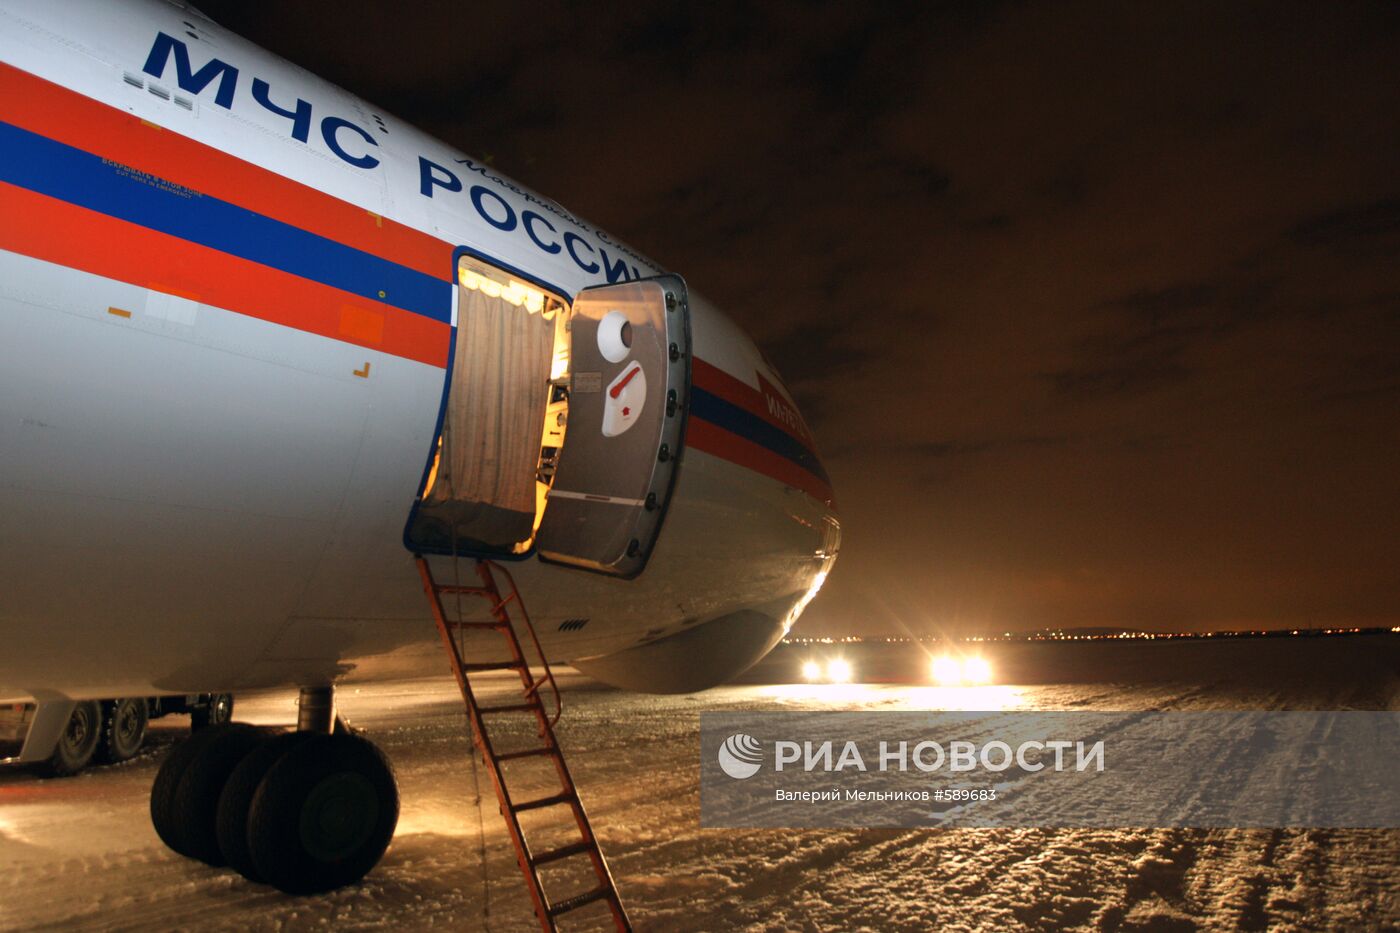 Самолет МЧС России на аэродроме в Жуковском